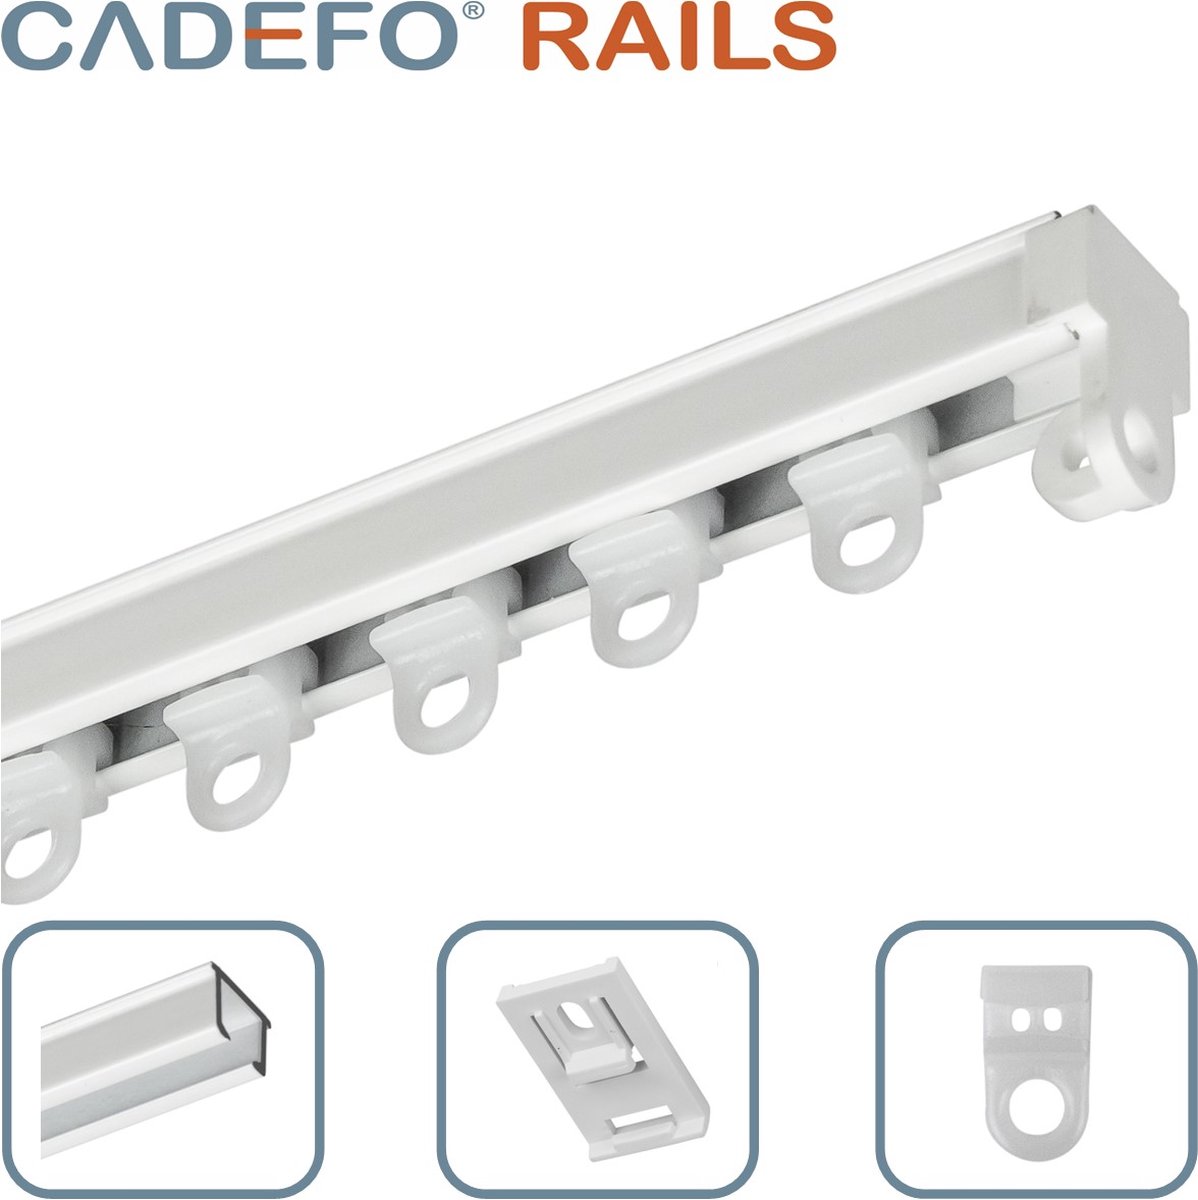 CADEFO RAILS (301 - 350 cm) Gordijnrails - Compleet op maat! - UIT 1 STUK - Leverbaar tot 6 meter - Plafondbevestiging - Lengte 323 cm